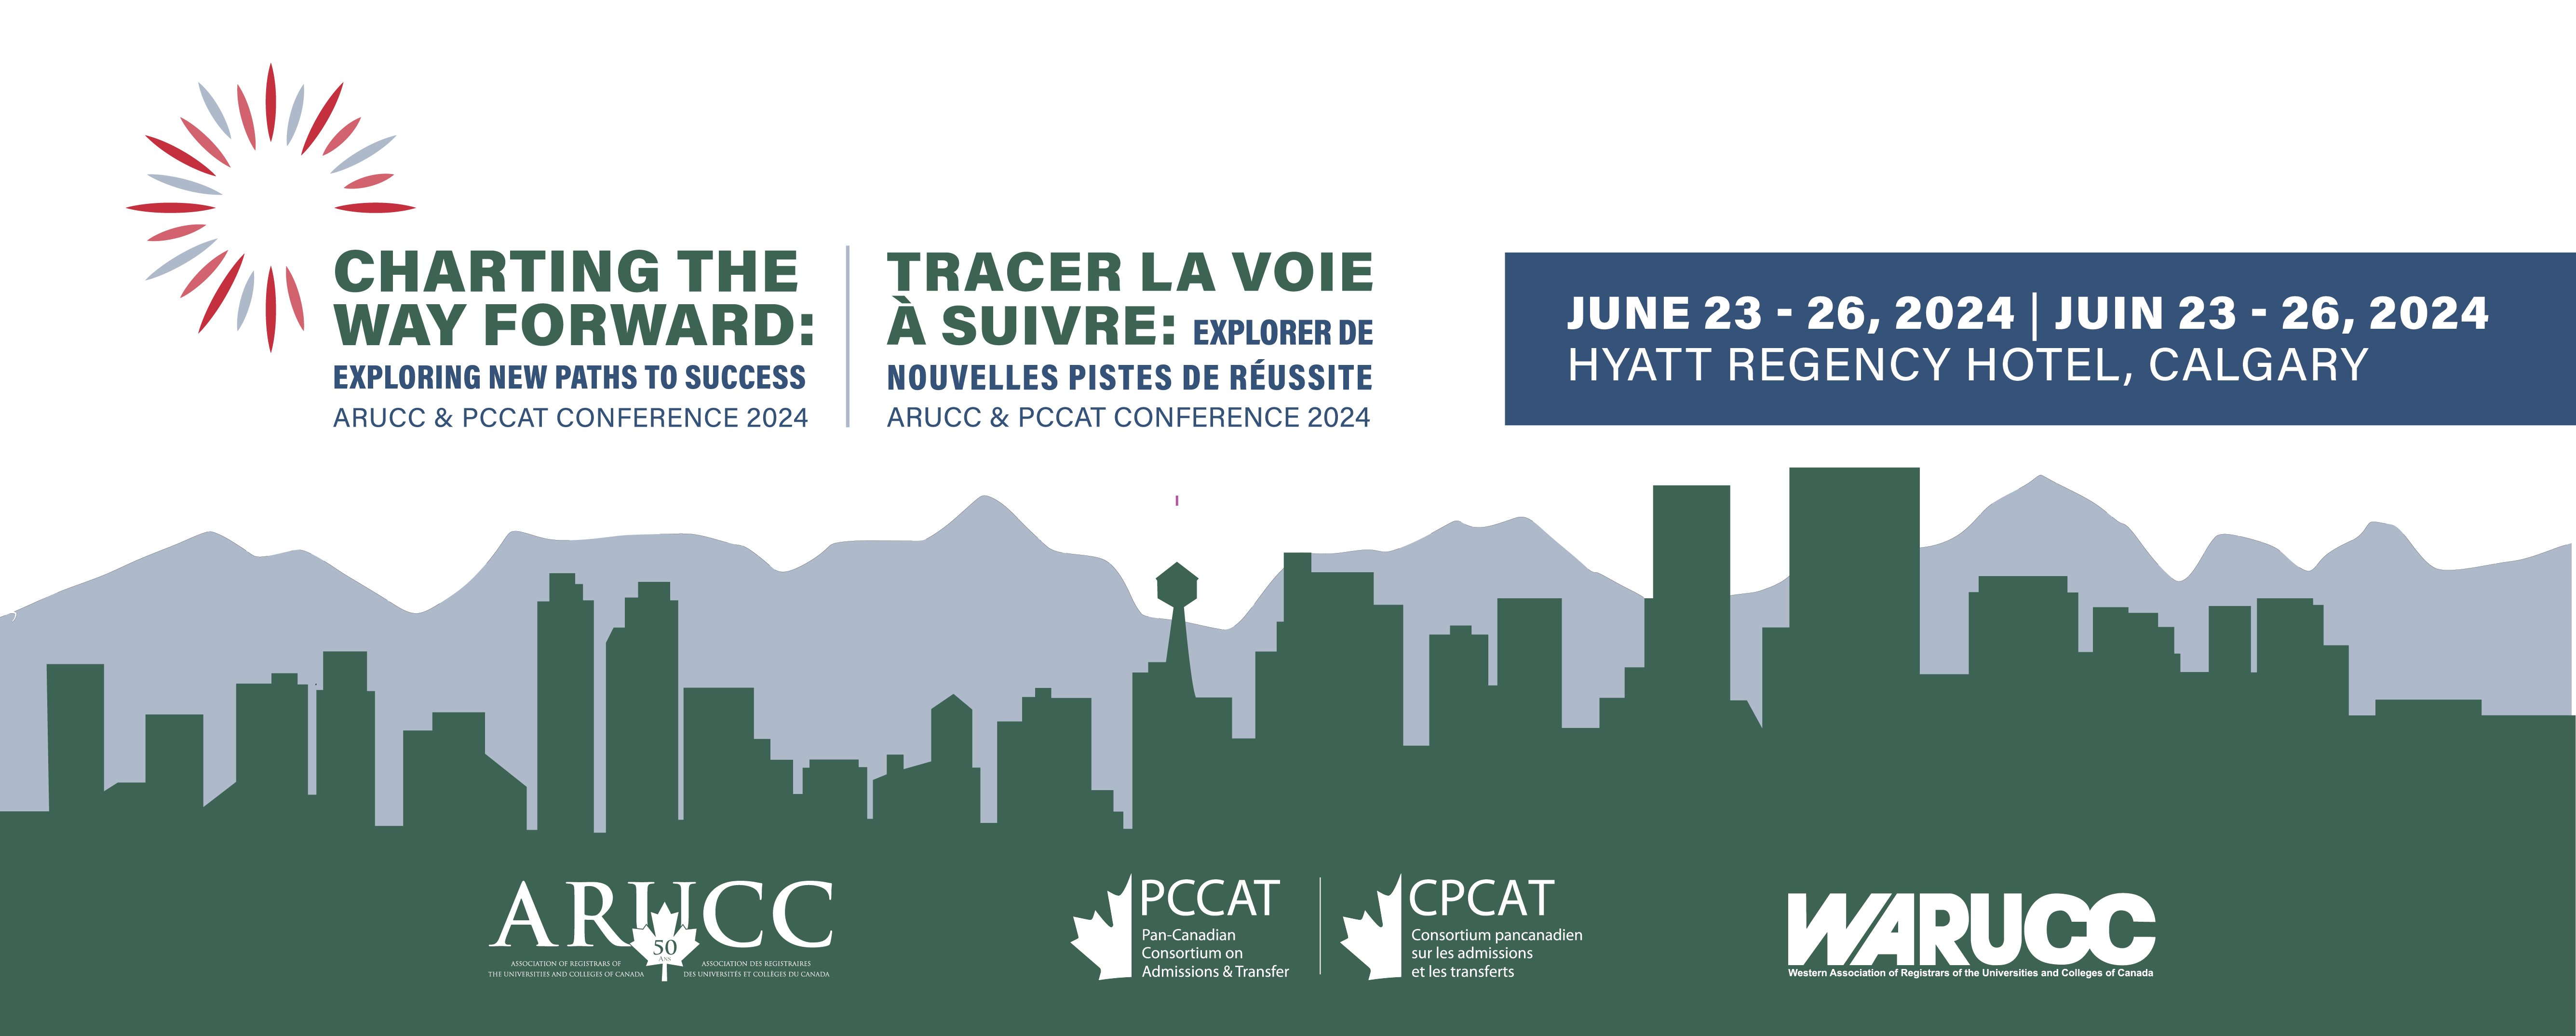 ARUCC PCCAT Conference June 23-26, 2024 in Calgary, Alberta